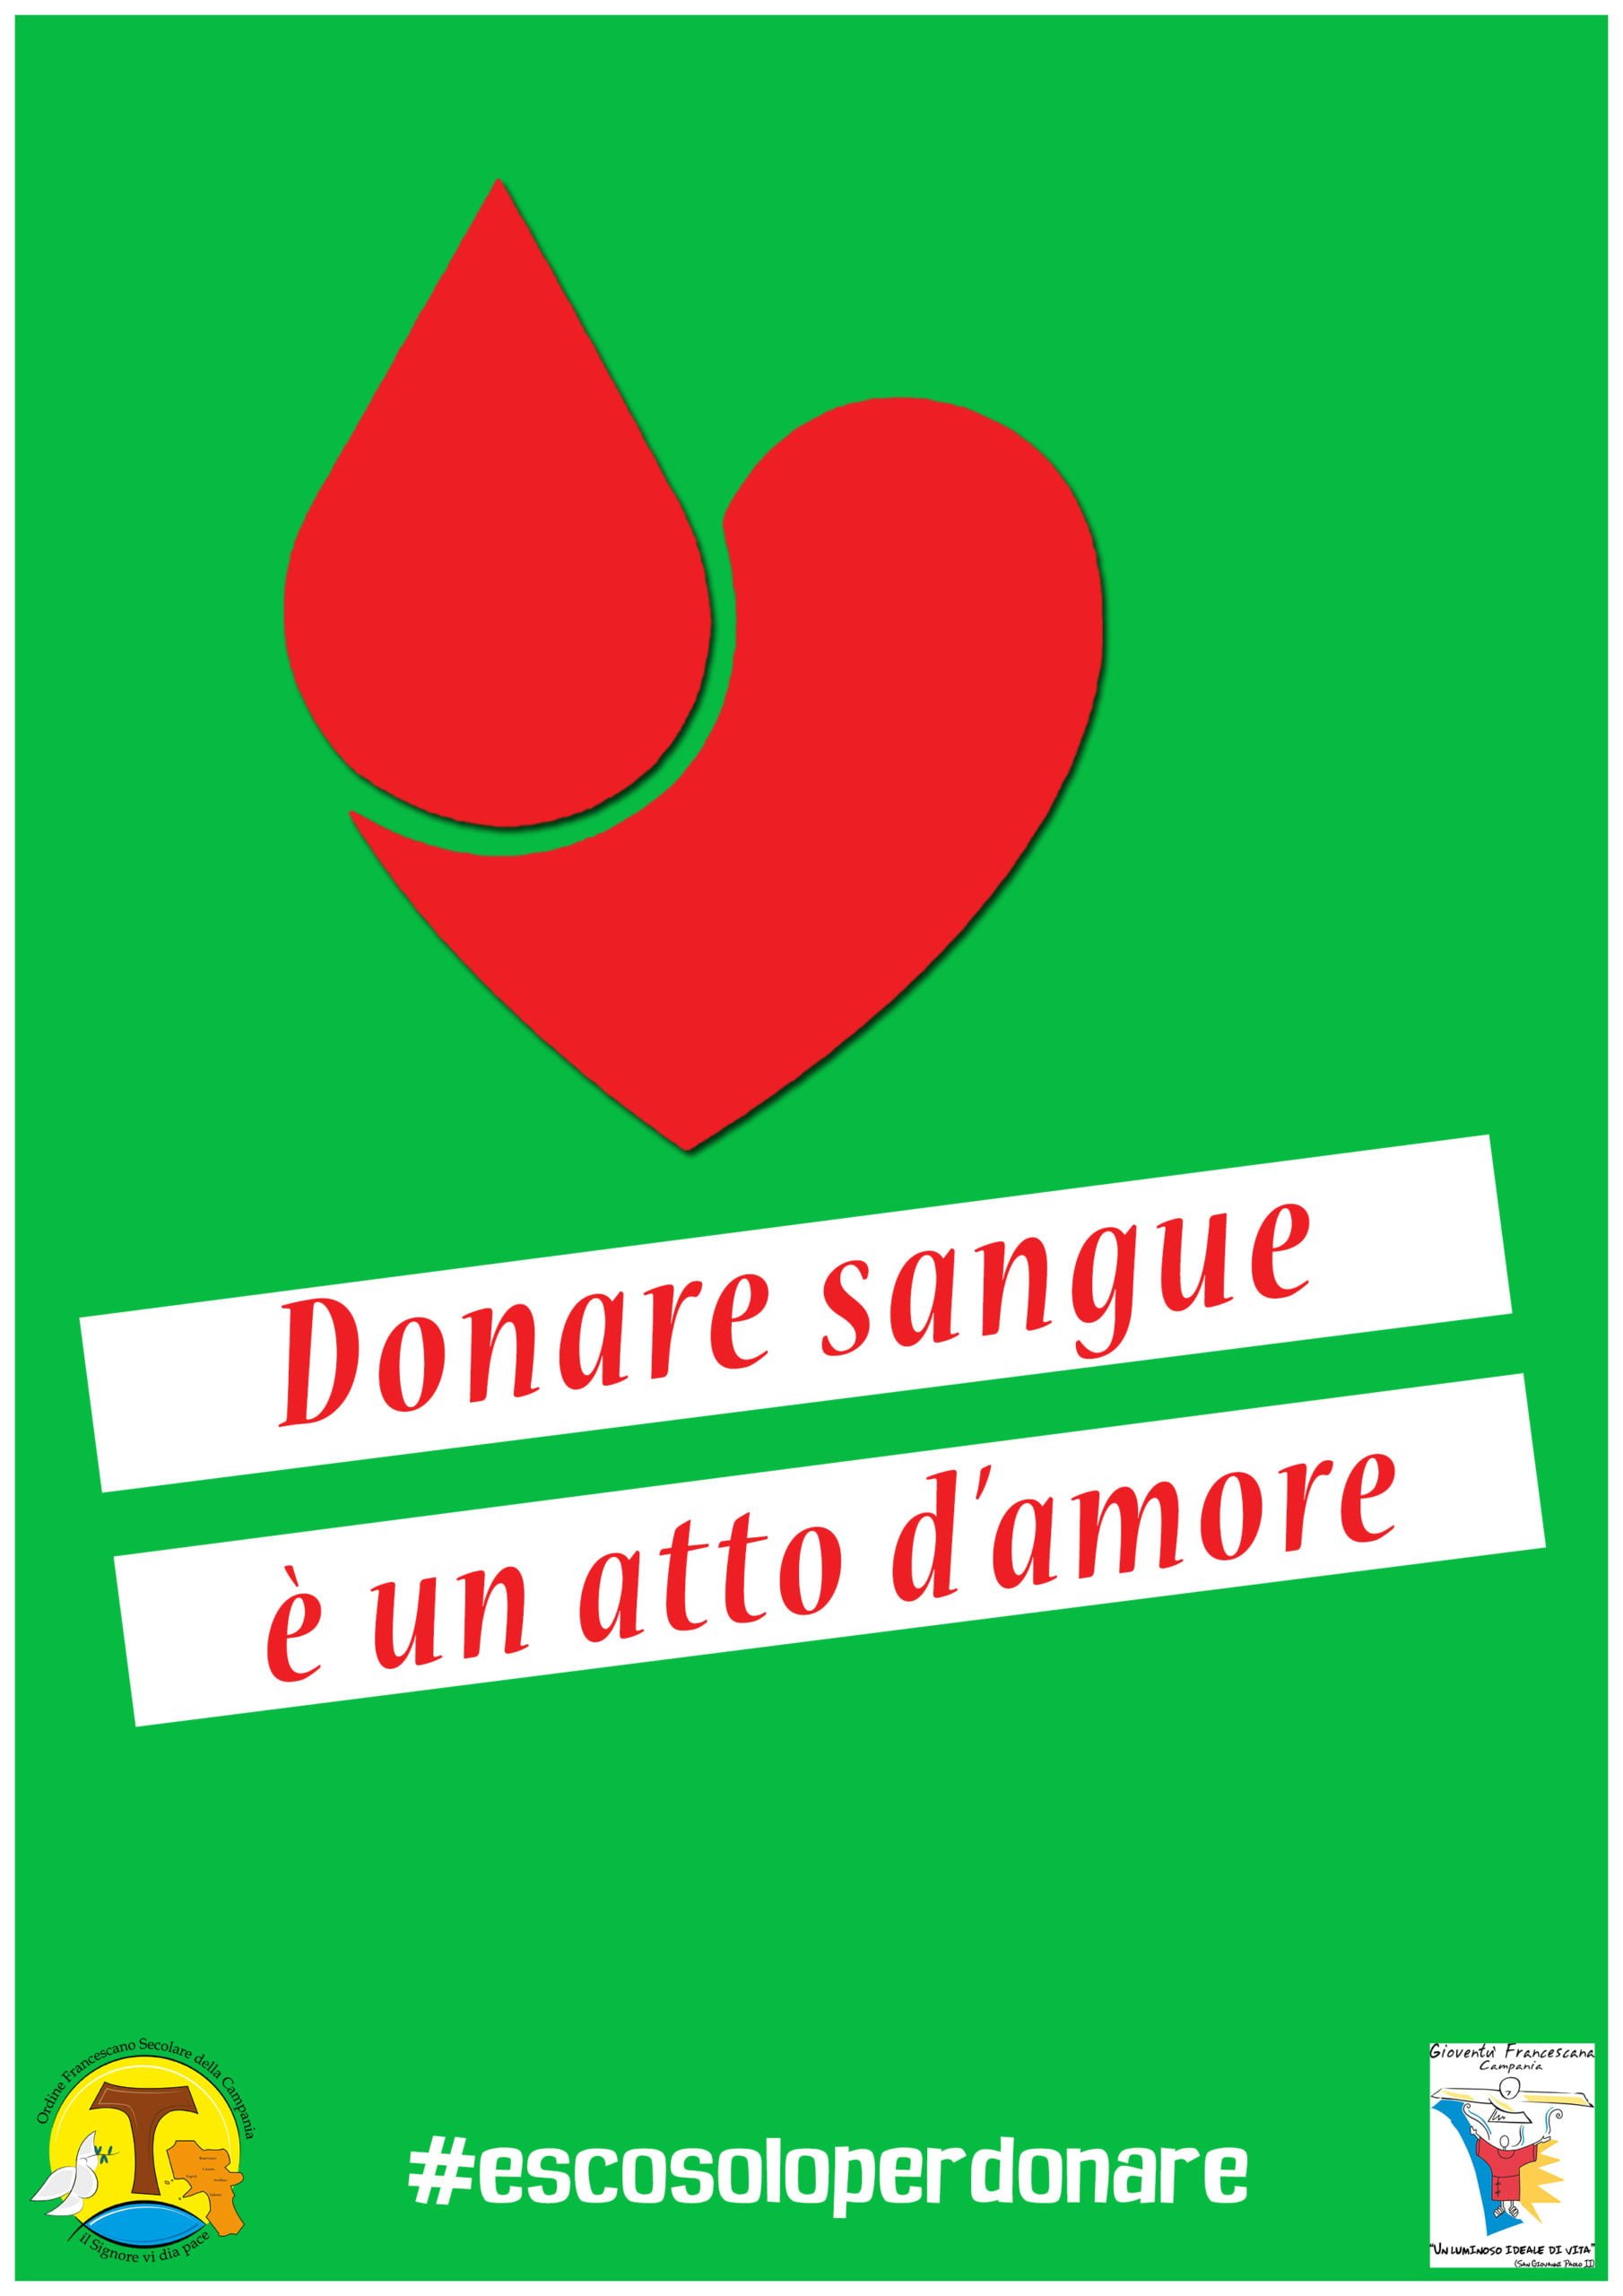 donare sangue è un atto d’amore